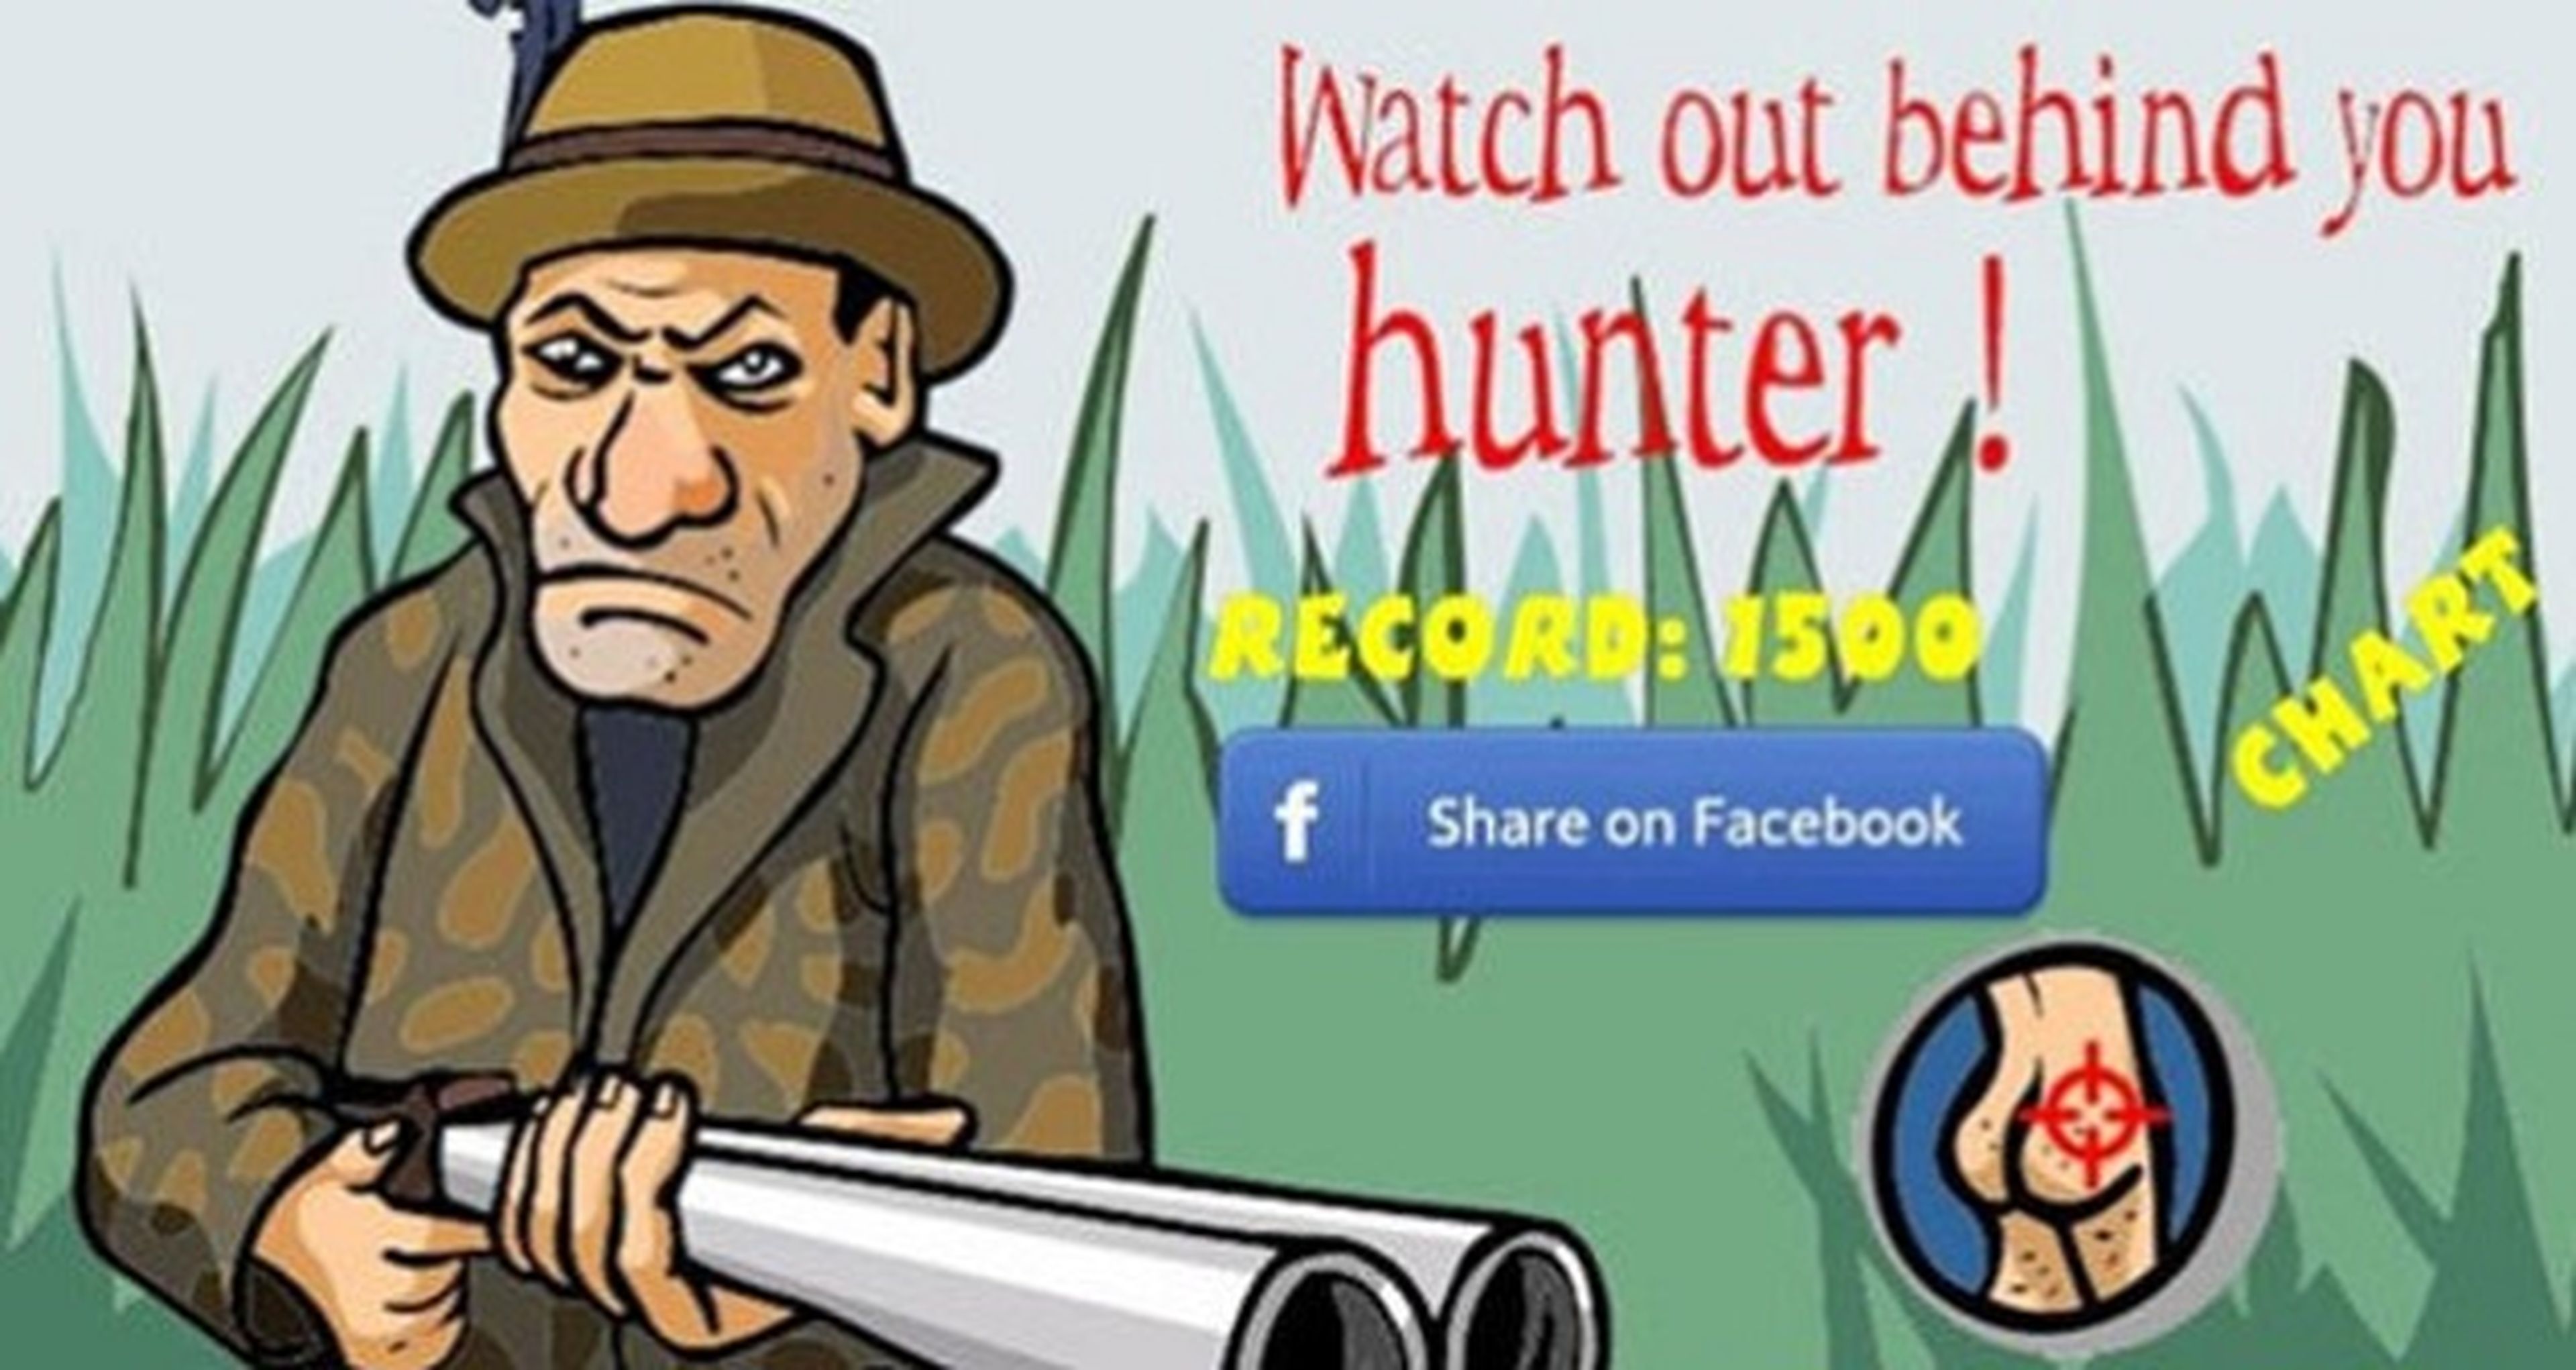 Piden la retirada de Watch Behind You Hunter!, un juego de asesinar homosexuales